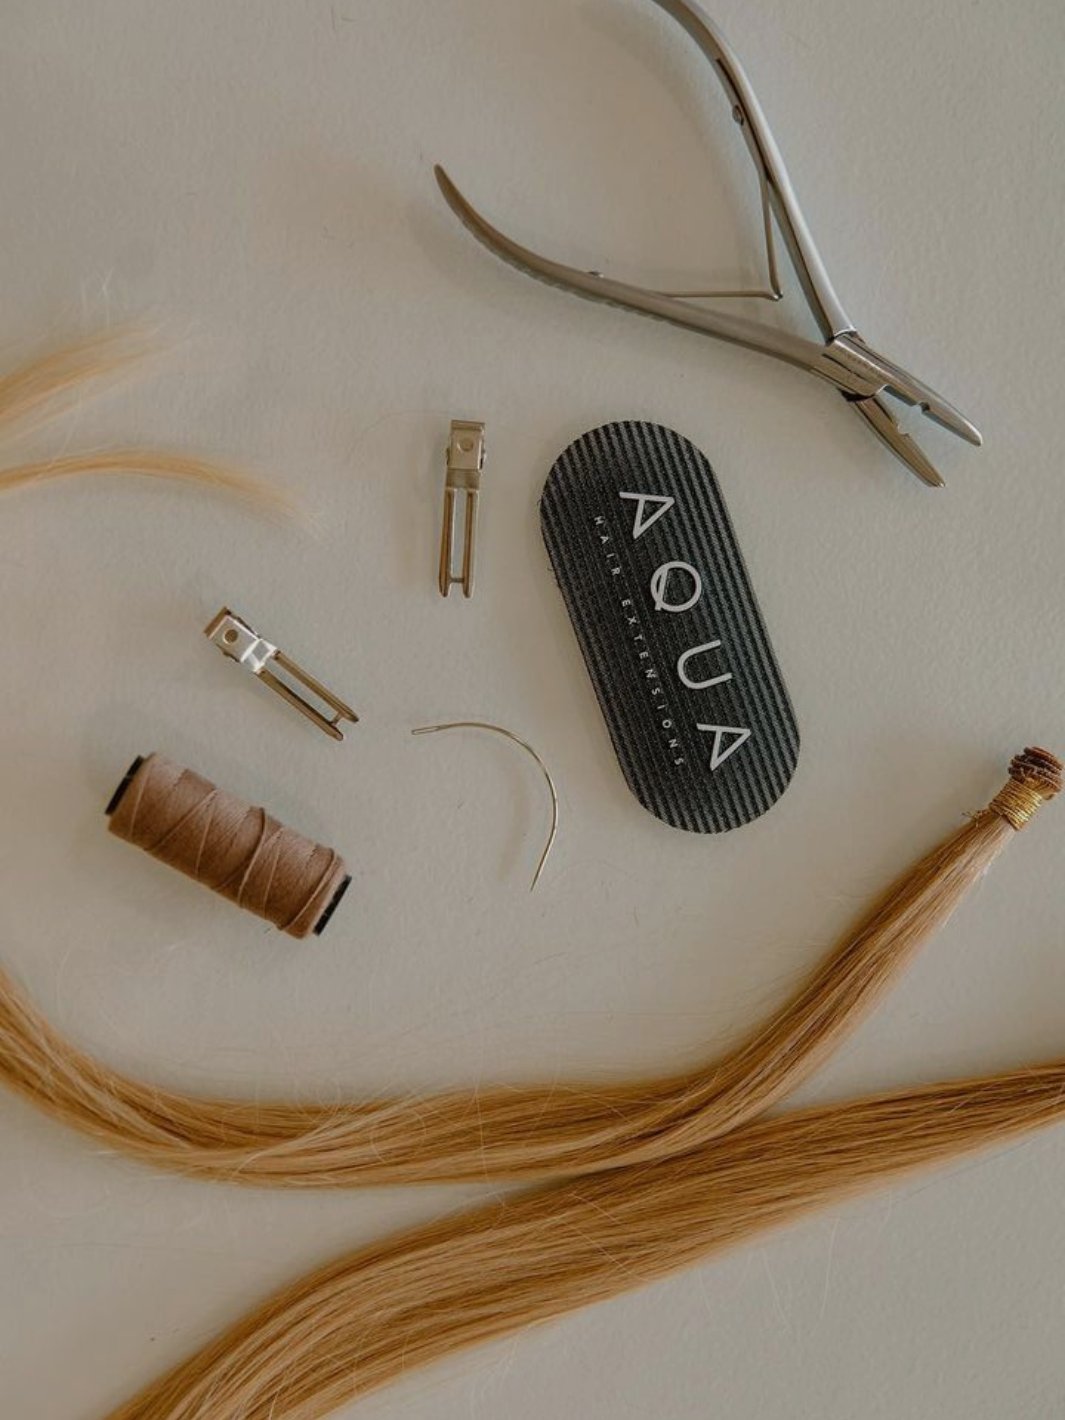 Stainless Steel Loop Tool by Aqua Hair Extensions